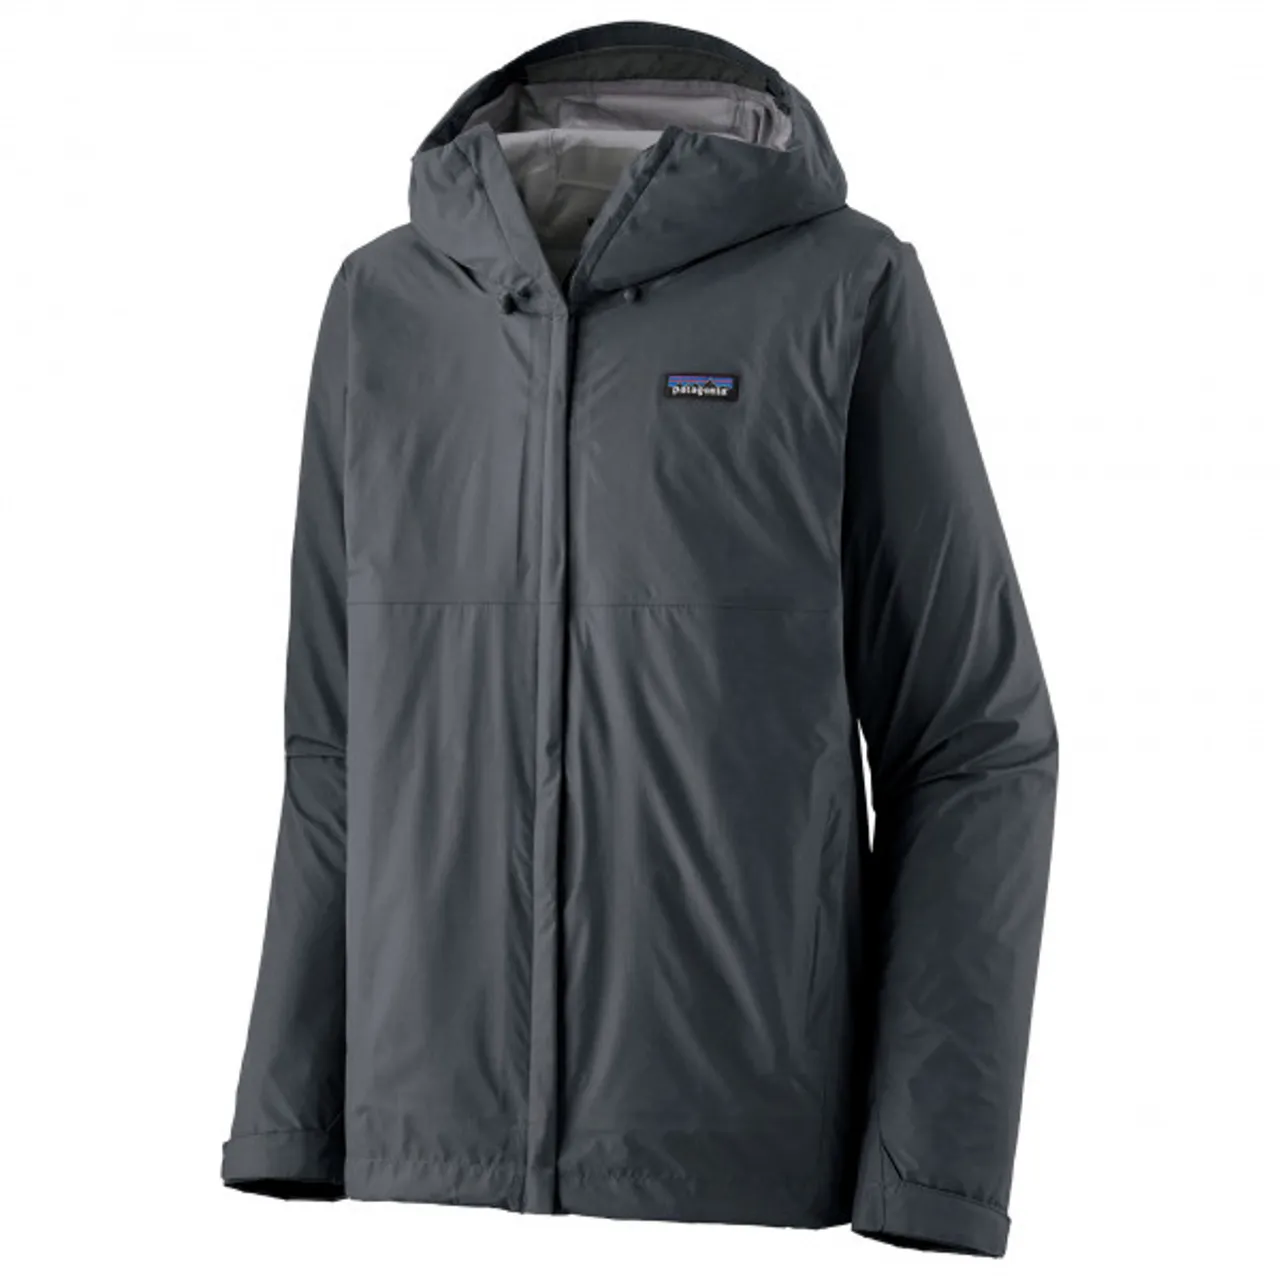 Patagonia - Torrentshell 3L Jacket - Waterproof jacket